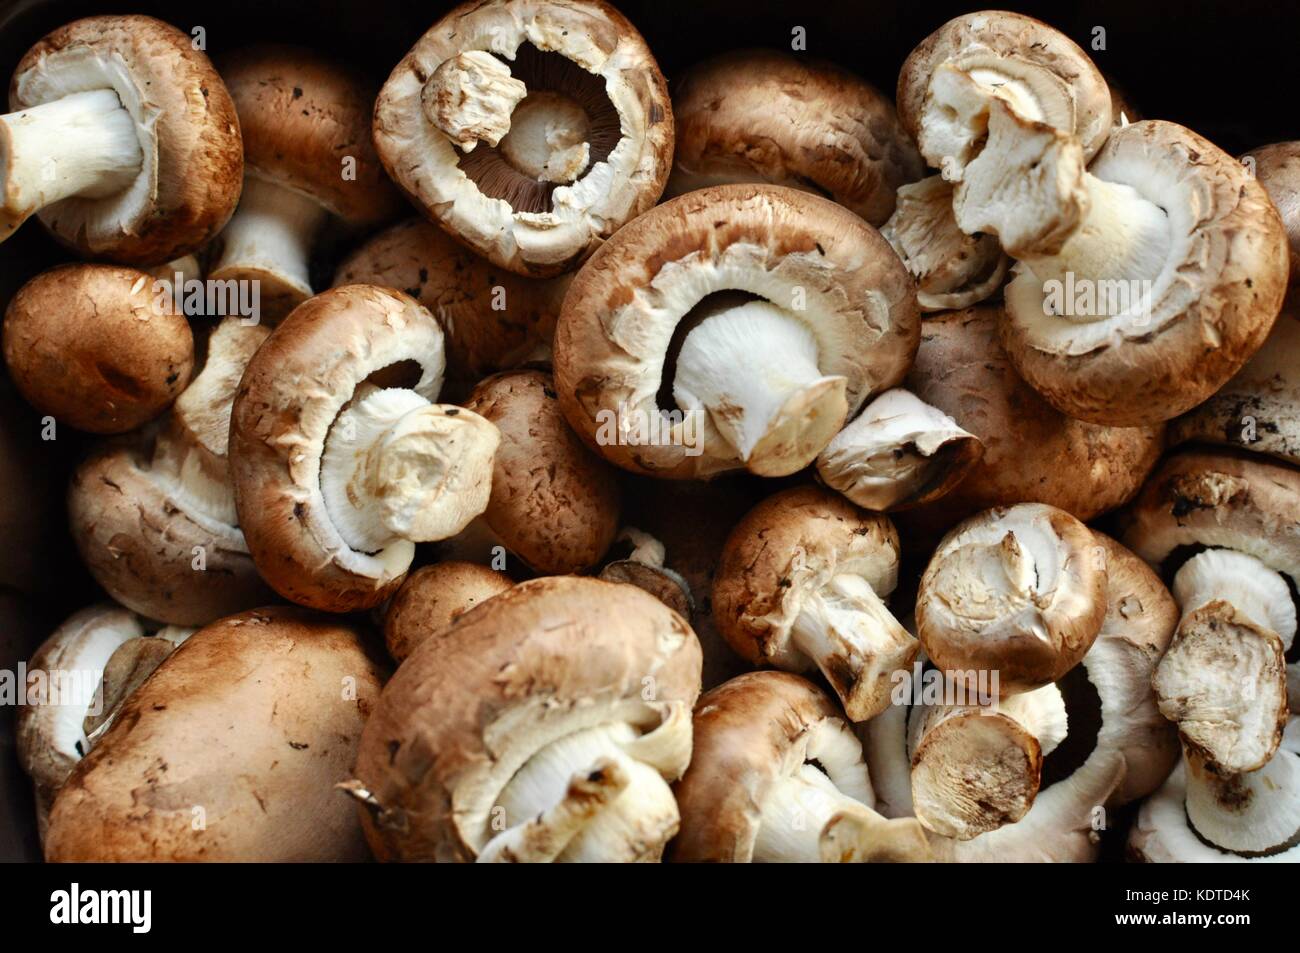 Punnet of dirty chestnut mushrooms Stock Photo